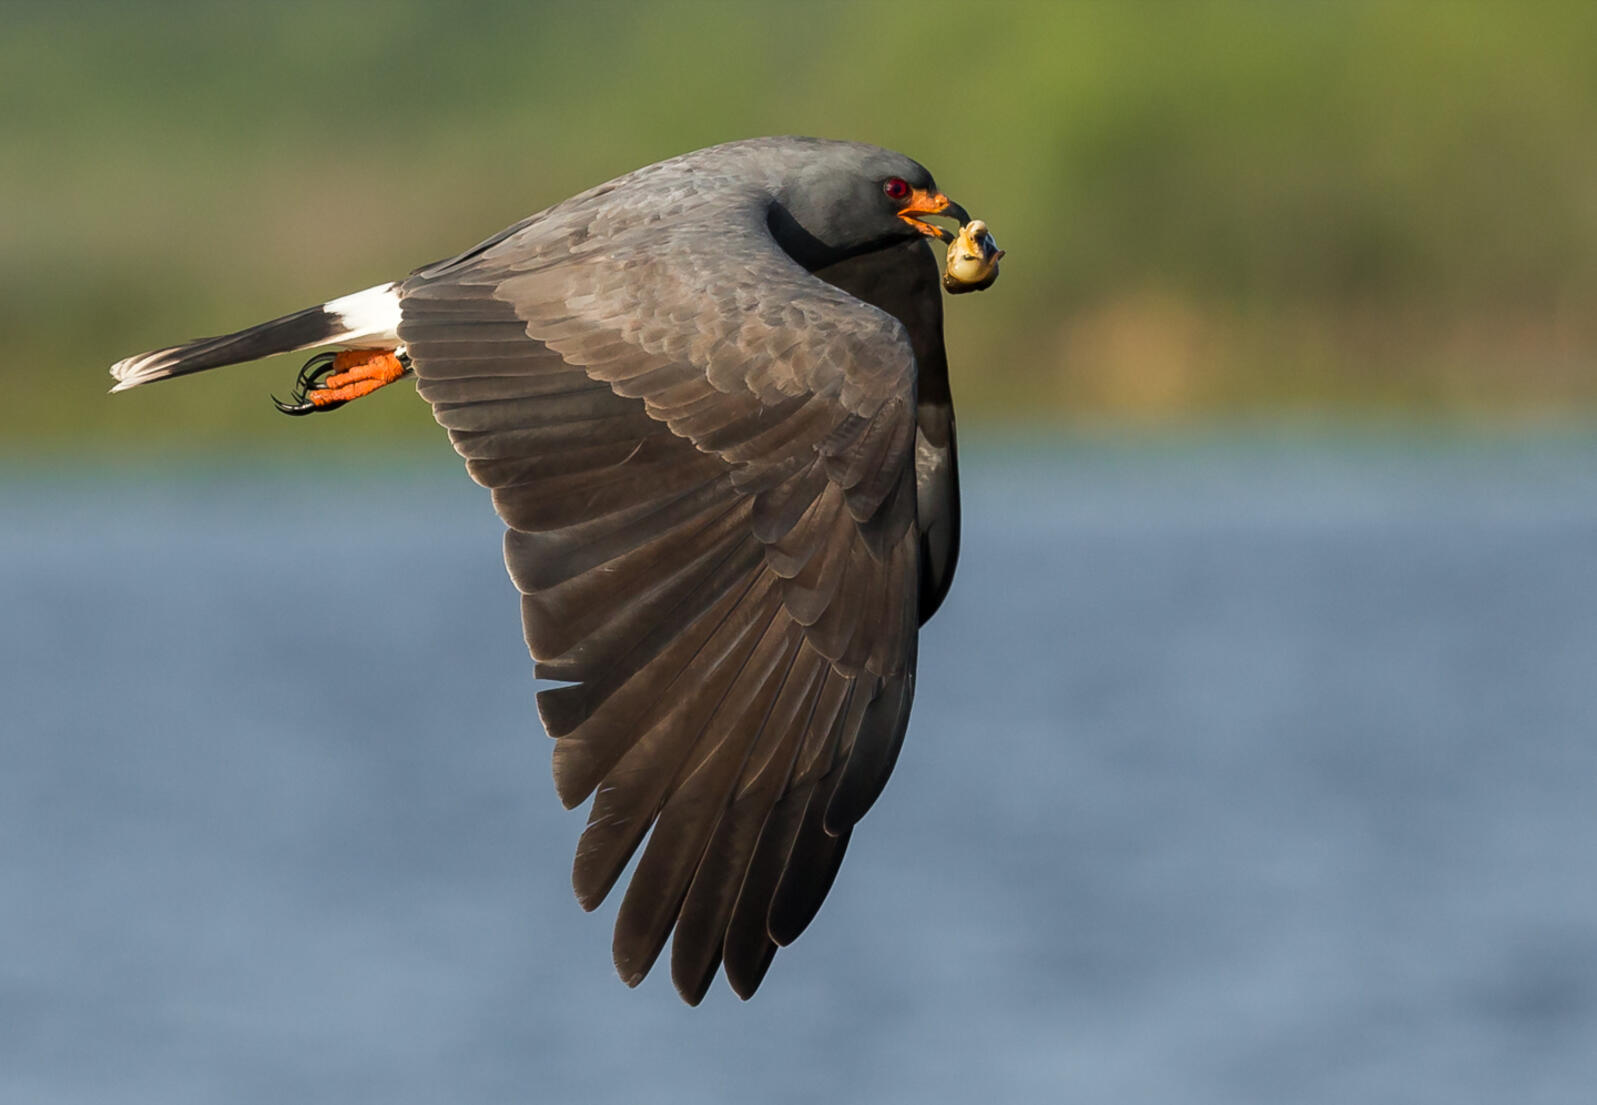 Large bird in flight over water.